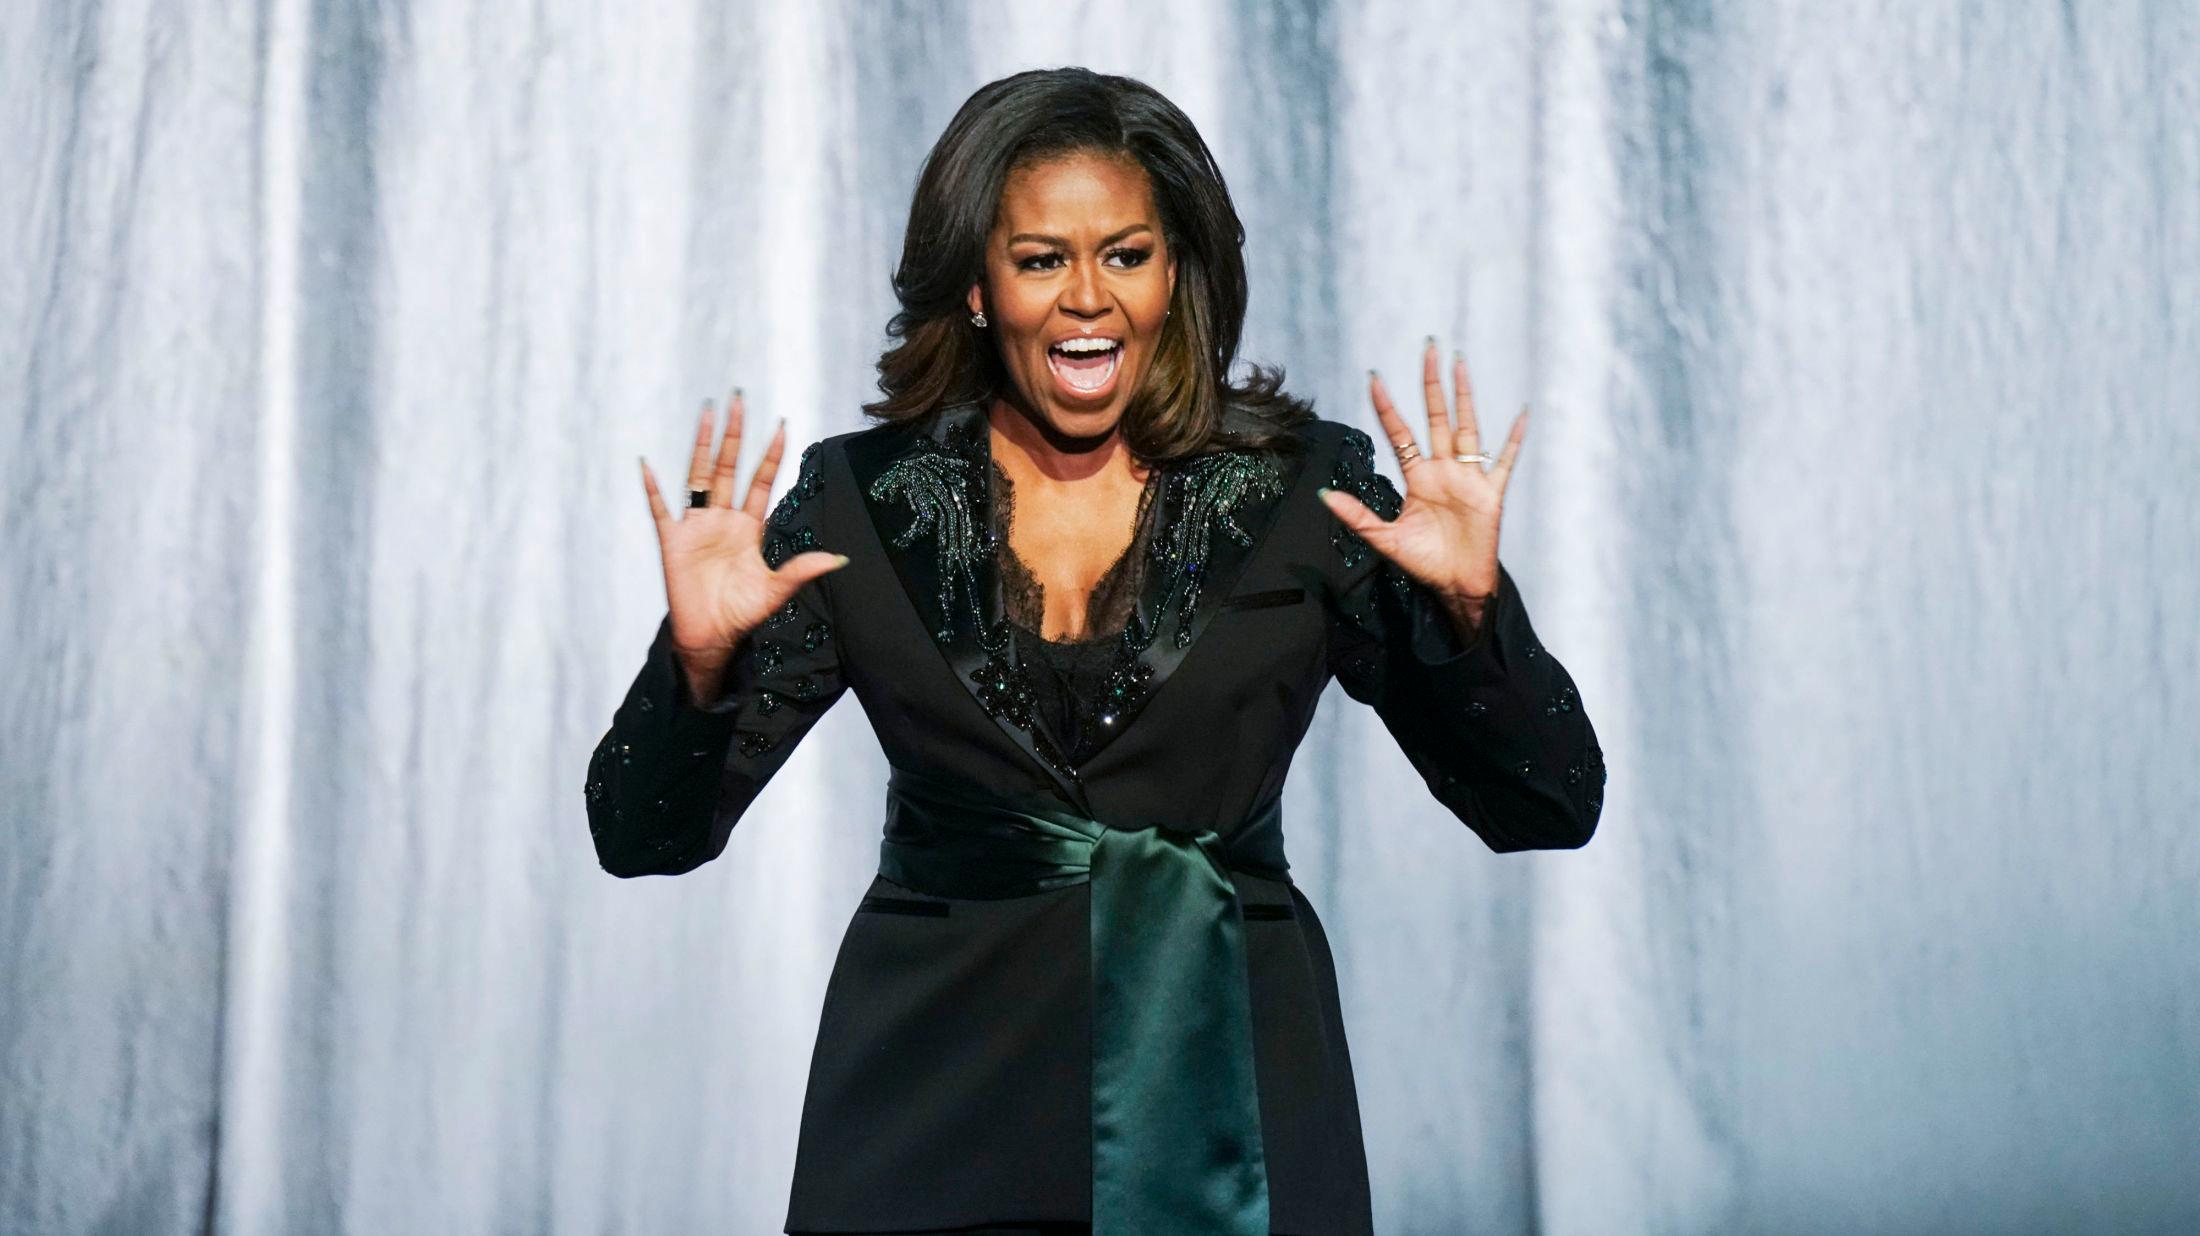 HEIER PÅ LOKALE DESIGNERE: Michelle Obama har brukt skandinavisk design på sin bokturné. Her her hun på scenen i Oslo ikledd norsk design. Foto: Heiko Junge / NTB scanpix